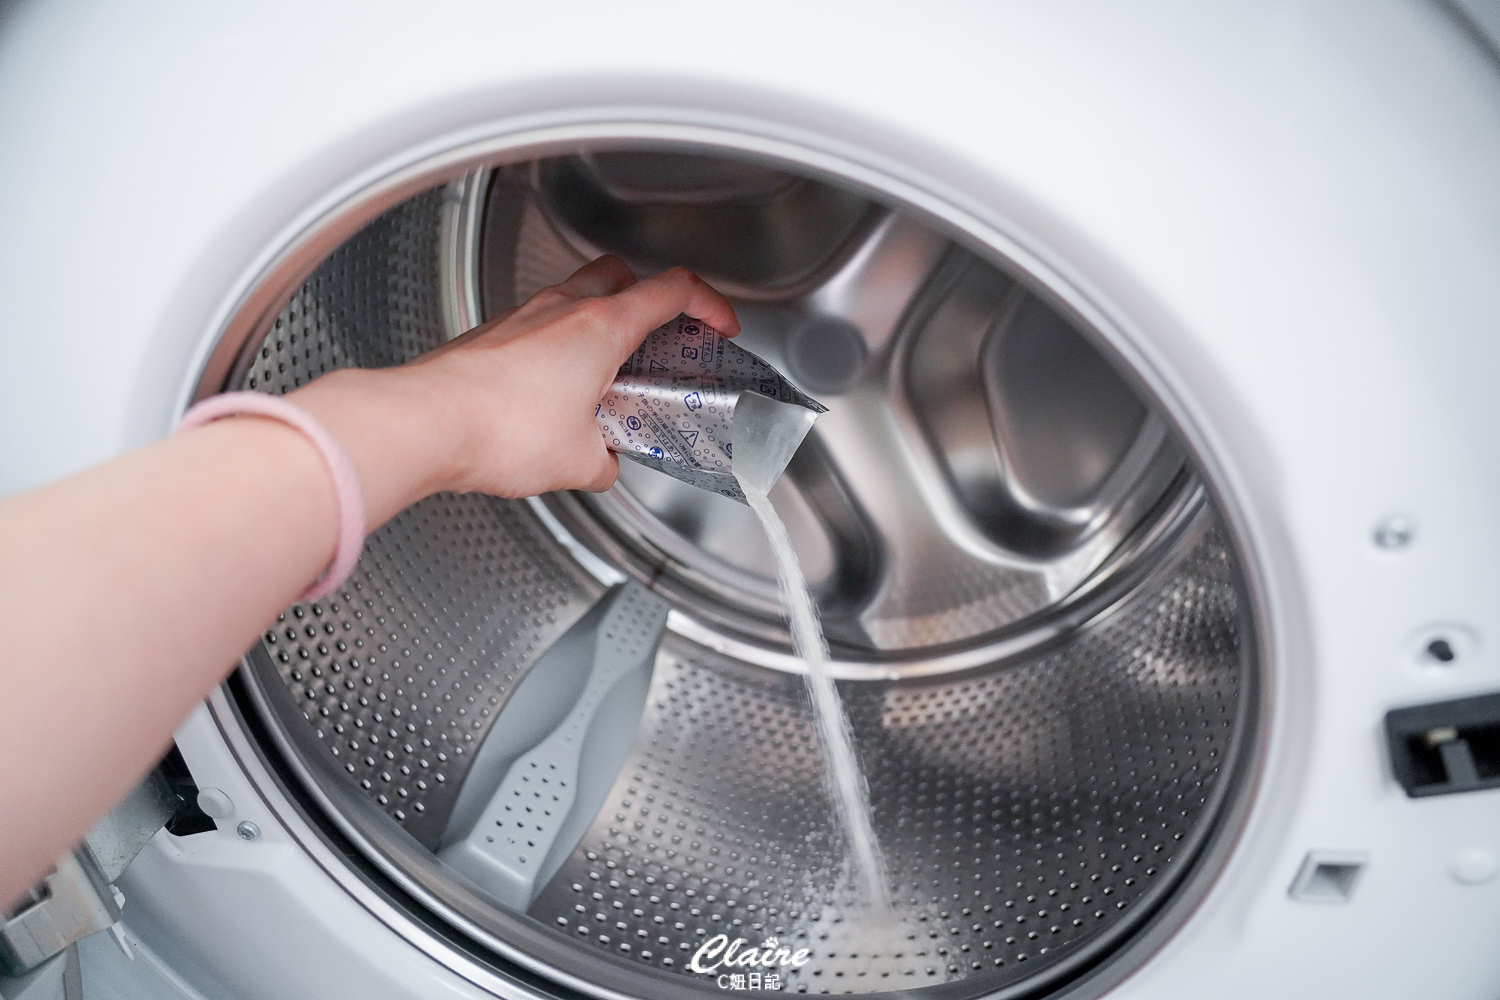 洗衣機清潔劑！日本製滾筒式洗衣槽清潔劑-酵素泡泡除菌、去汙又芳香